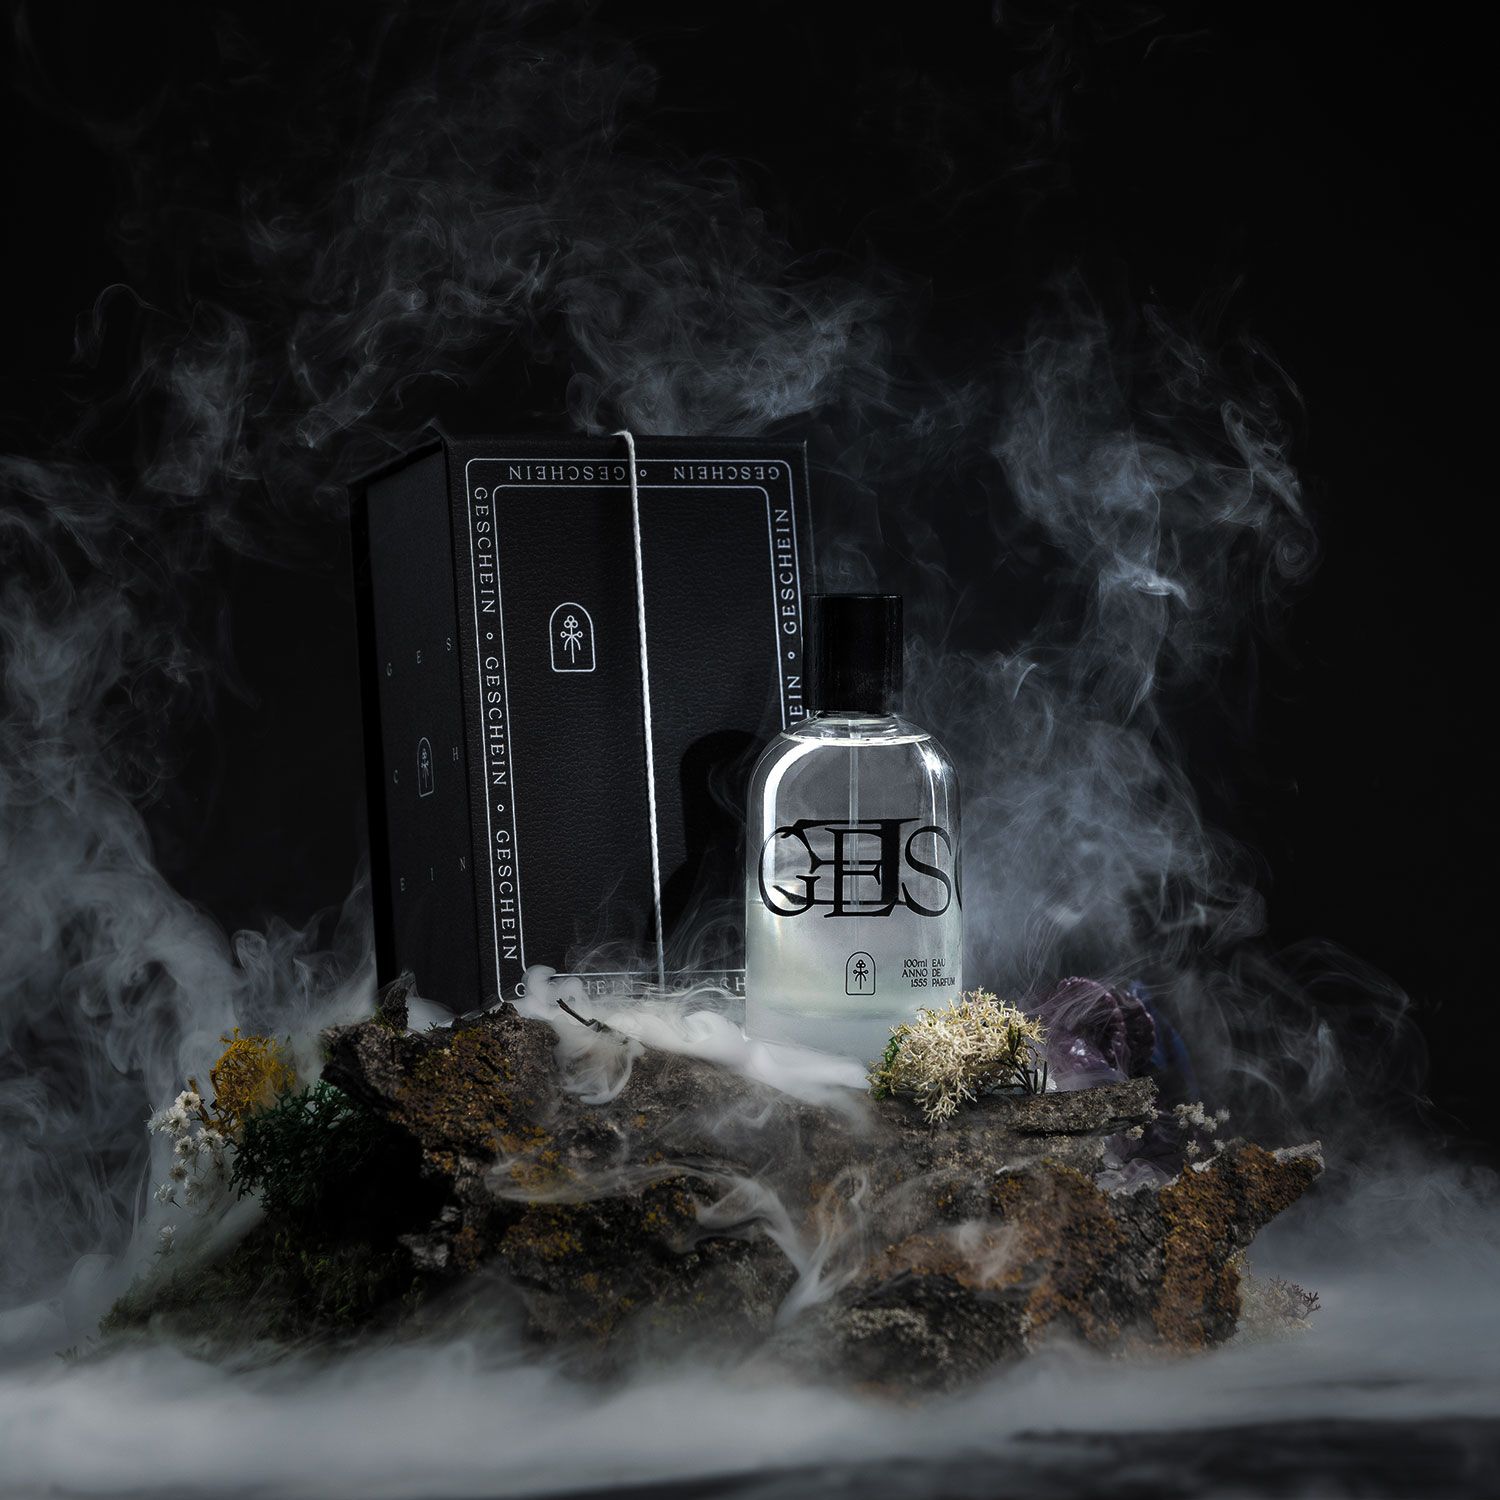 GESCHEIN eau de parfum Branding Design